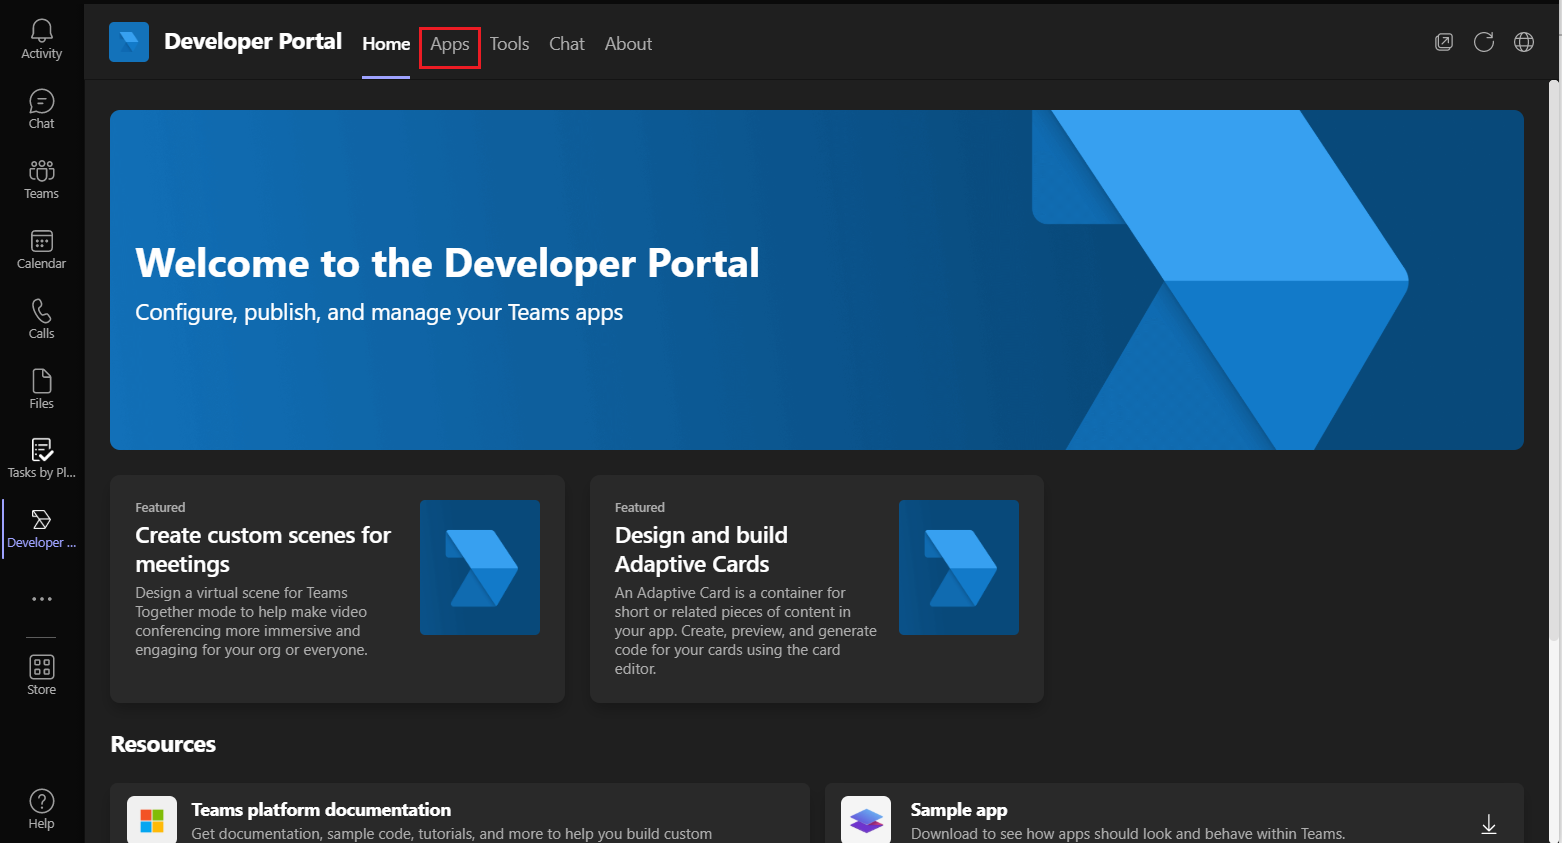 Captura de tela do aplicativo Portal do Desenvolvedor.